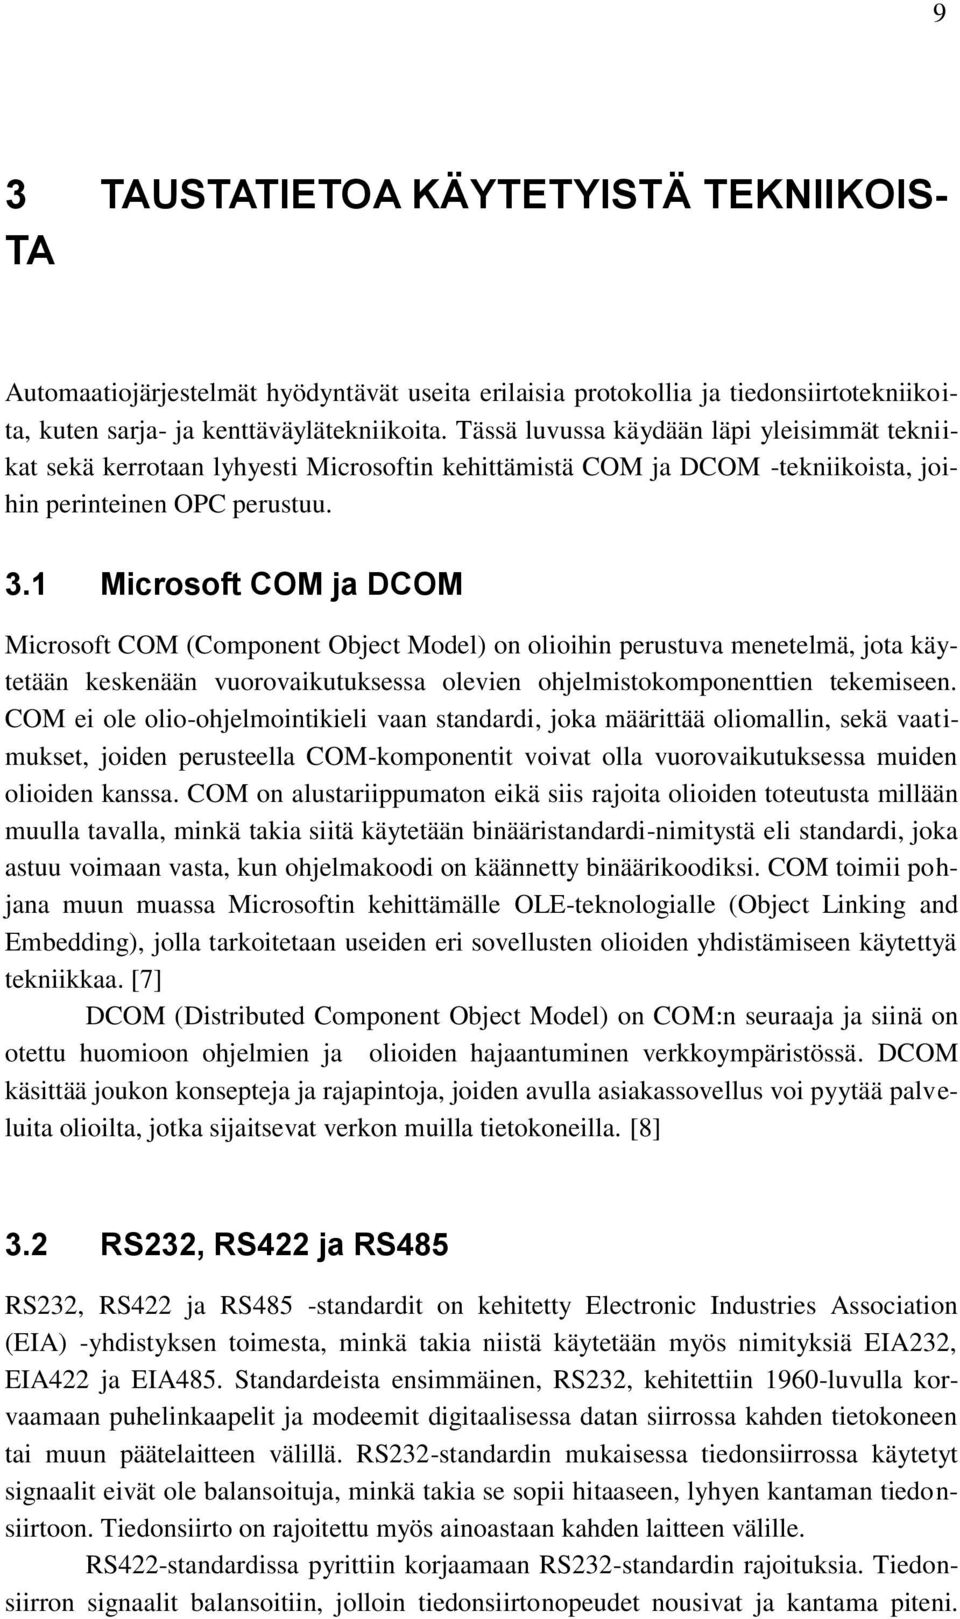 1 Microsoft COM ja DCOM Microsoft COM (Component Object Model) on olioihin perustuva menetelmä, jota käytetään keskenään vuorovaikutuksessa olevien ohjelmistokomponenttien tekemiseen.